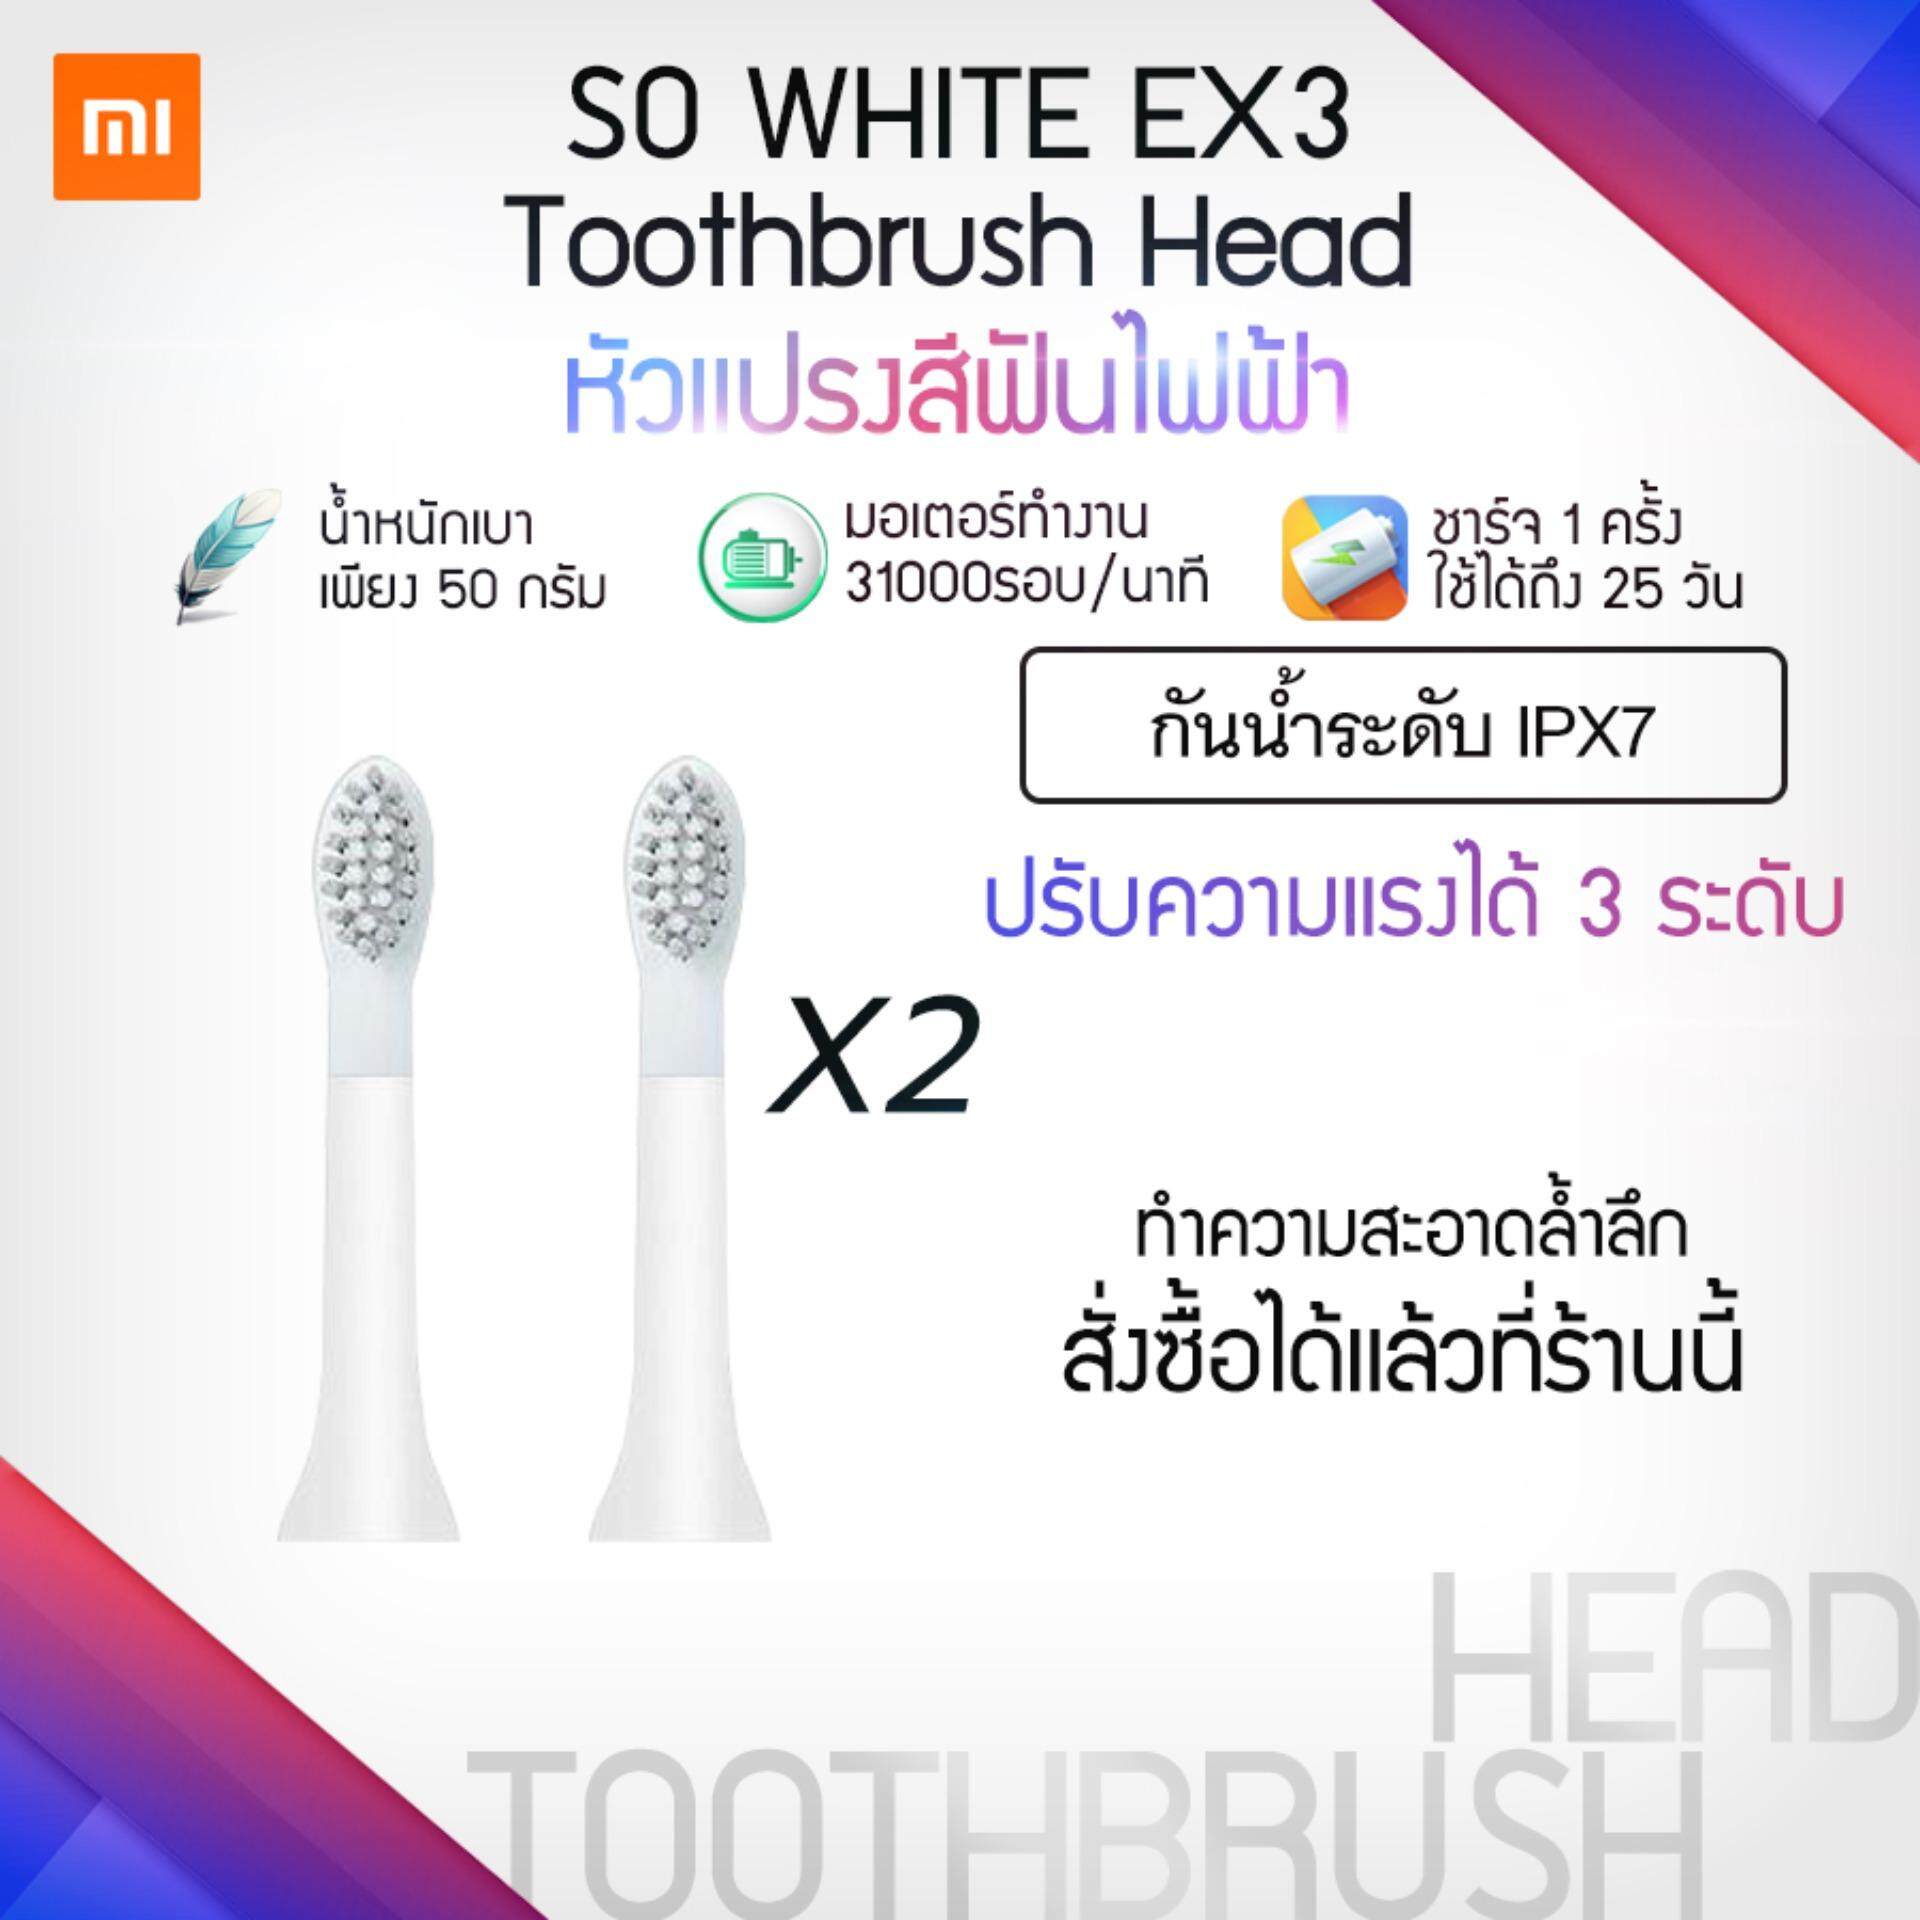 แปรงสีฟันไฟฟ้า ช่วยดูแลสุขภาพช่องปาก ยโสธร  หัวแปรงสีฟันไฟฟ้า   Xiaomi SO WHITE EX3 Electric toothbrush head